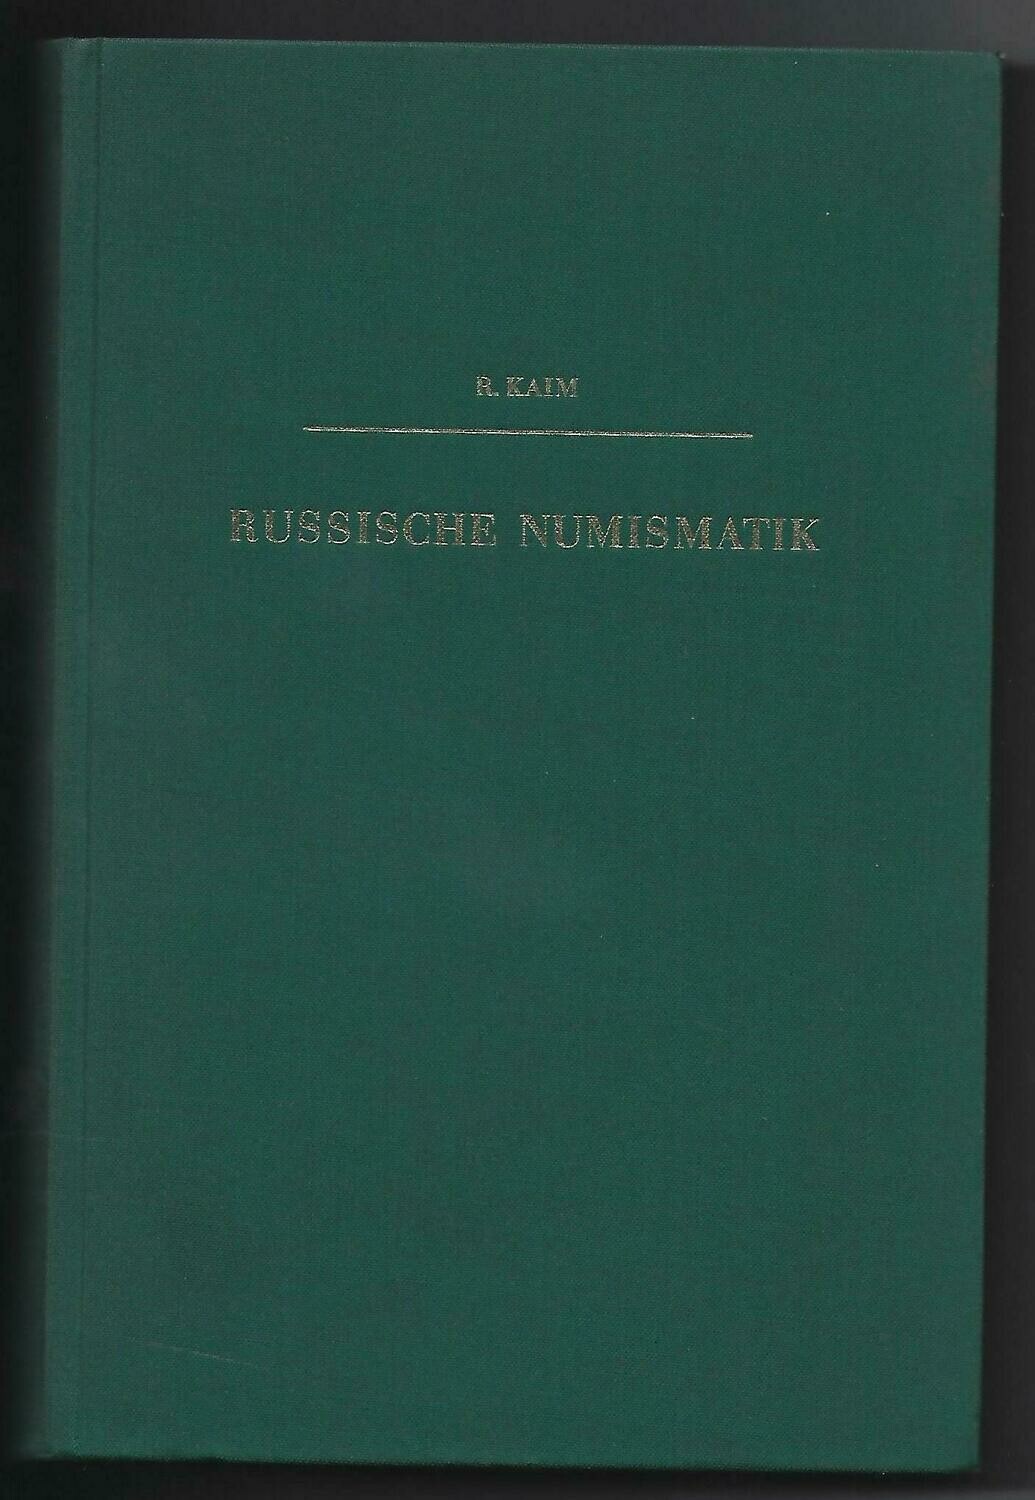 World; Reinhold Kaim, "Russische Numismatik."